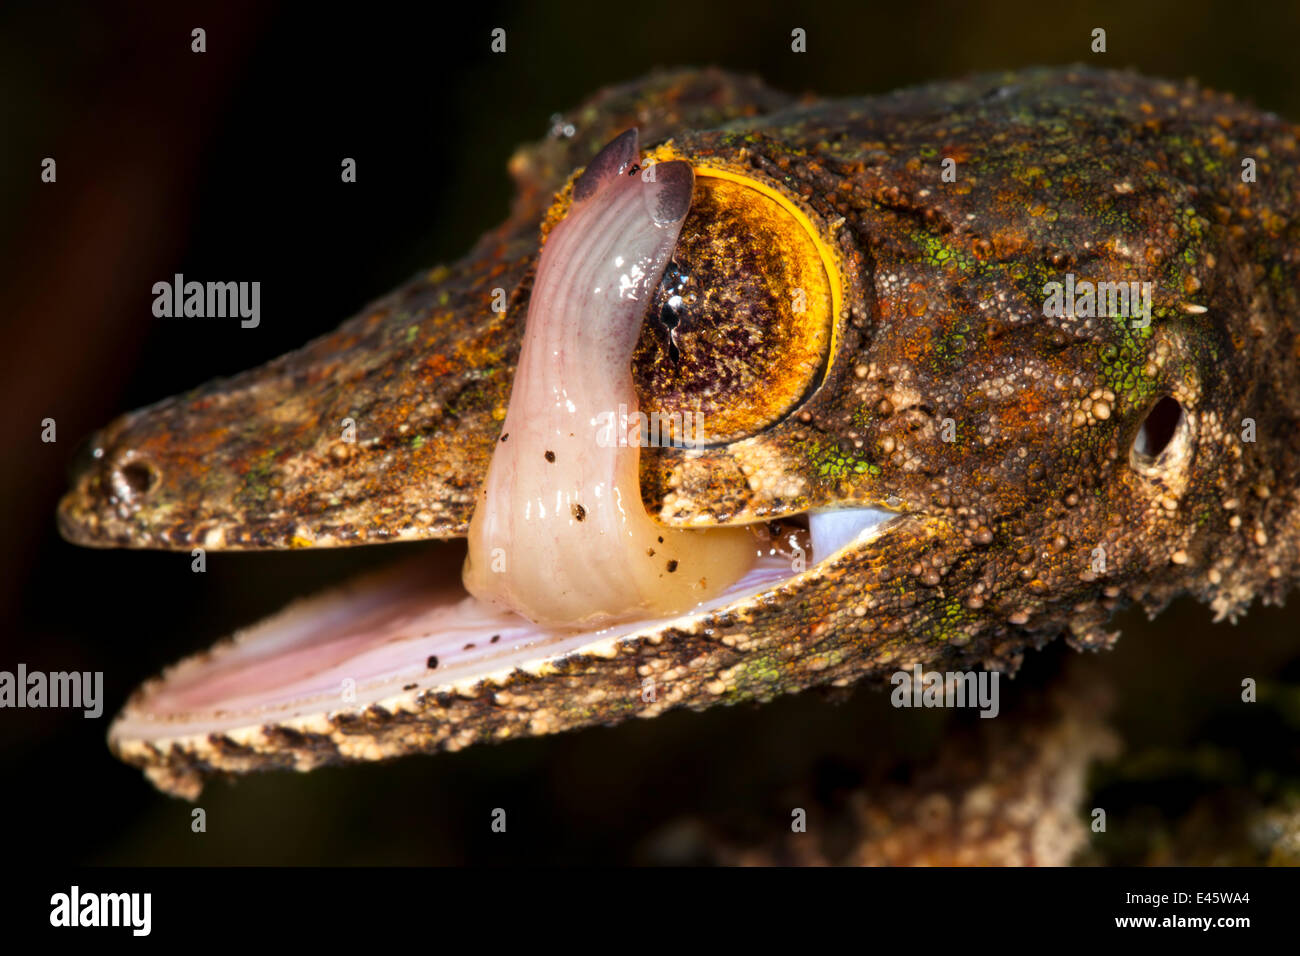 Foglia-tailed gecko {Uroplatus sikorae} leccare il suo occhio per pulirlo. Penisola di Masoala National Park, nel nord-est del Madagascar. Foto Stock